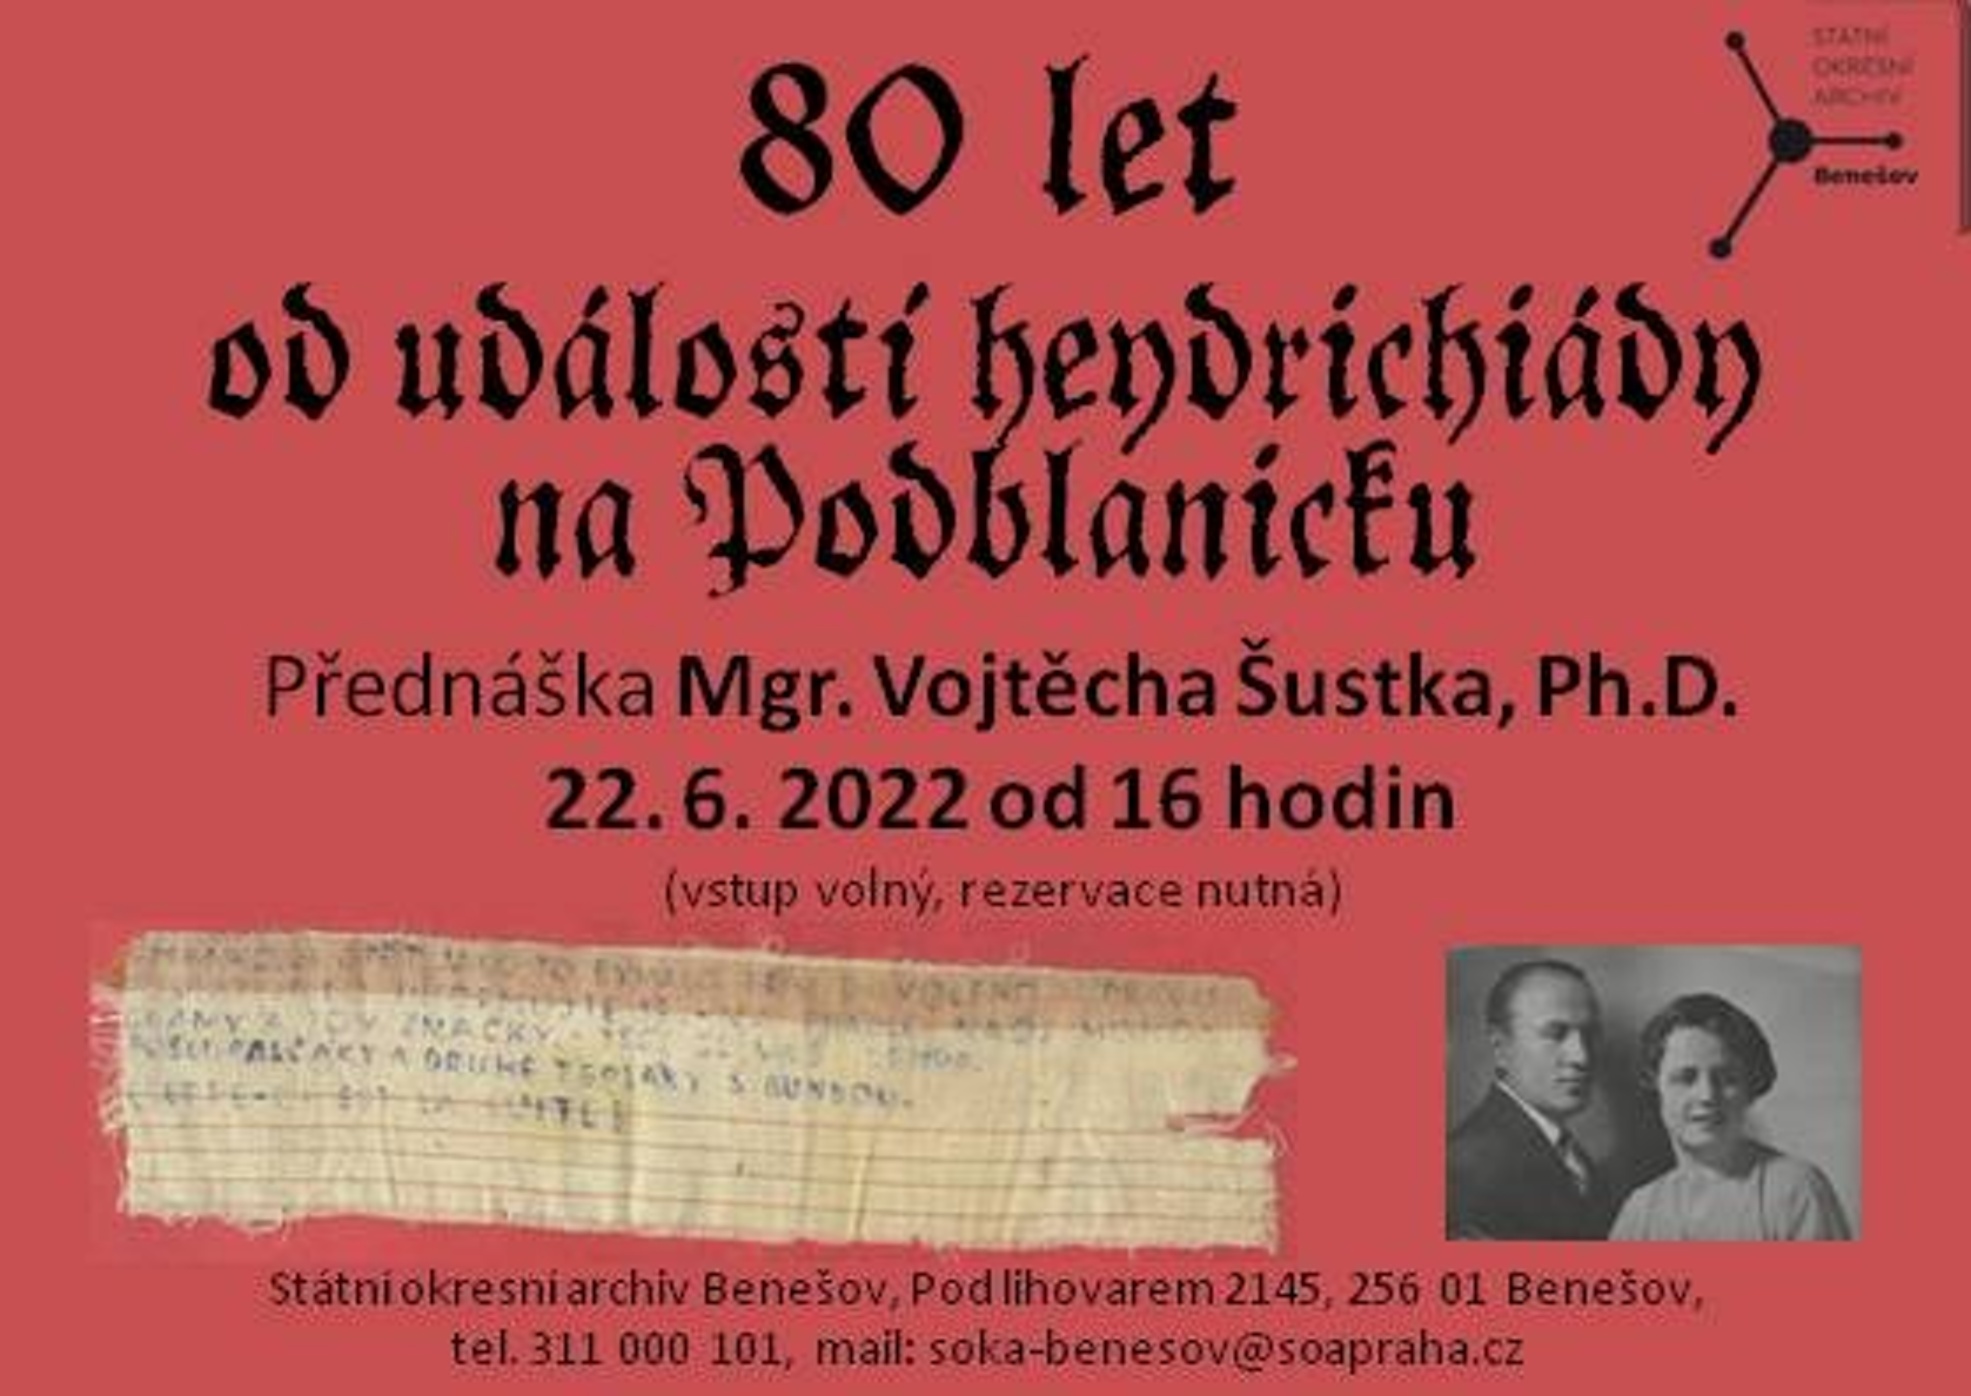 2022 06 22 80 let událostí heydrichiády na Podblanicku